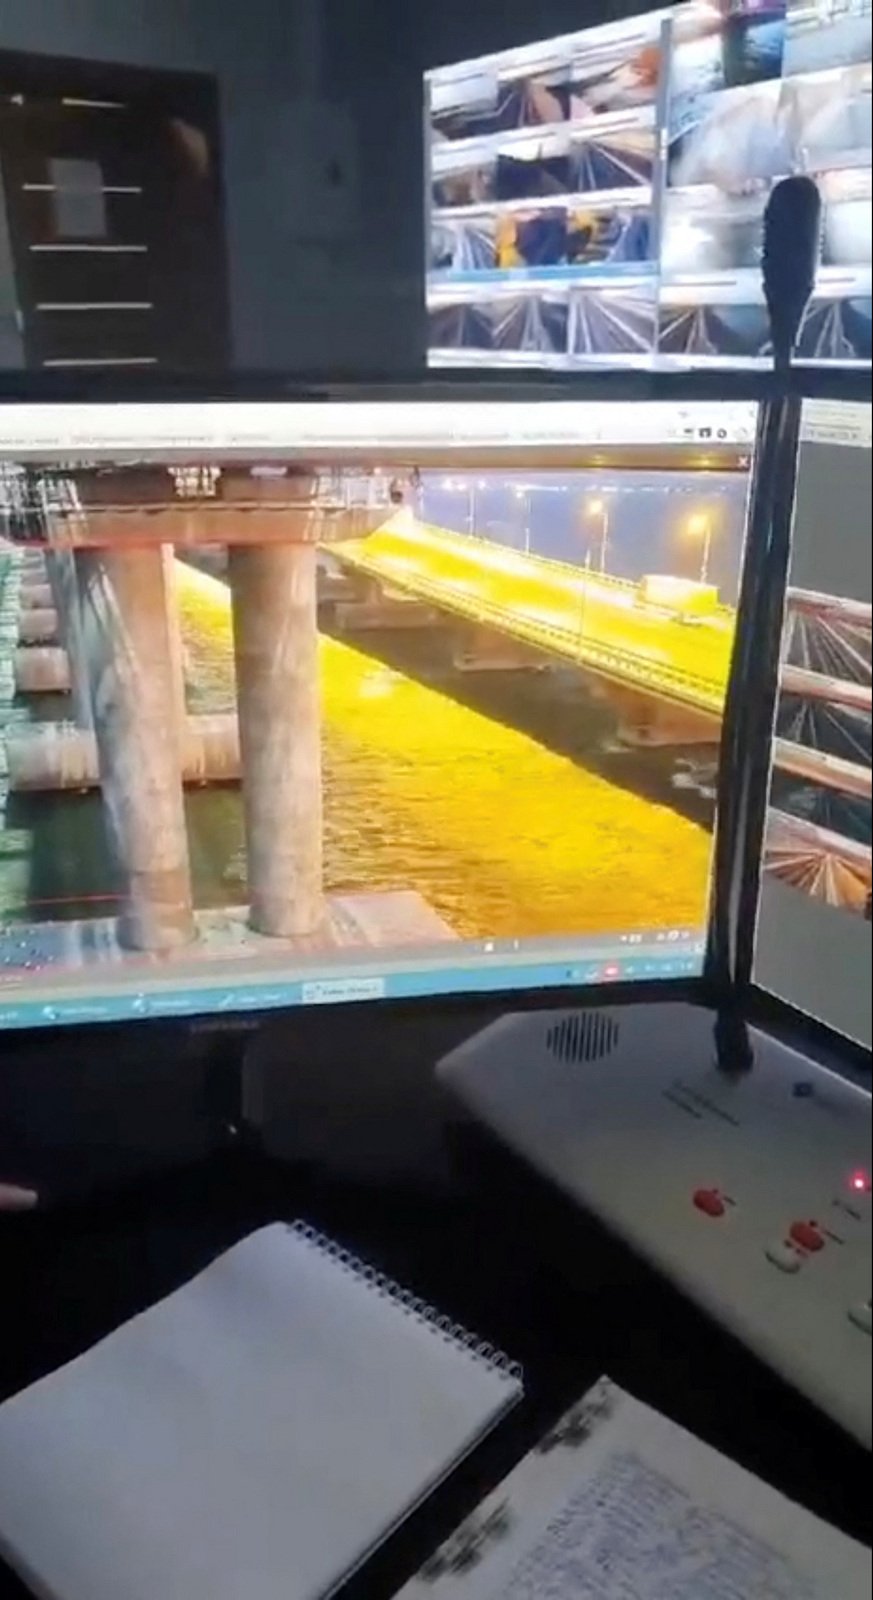 Výbuch Kerčského mostu vedoucího z Ruska na Krym (8.10.2022)